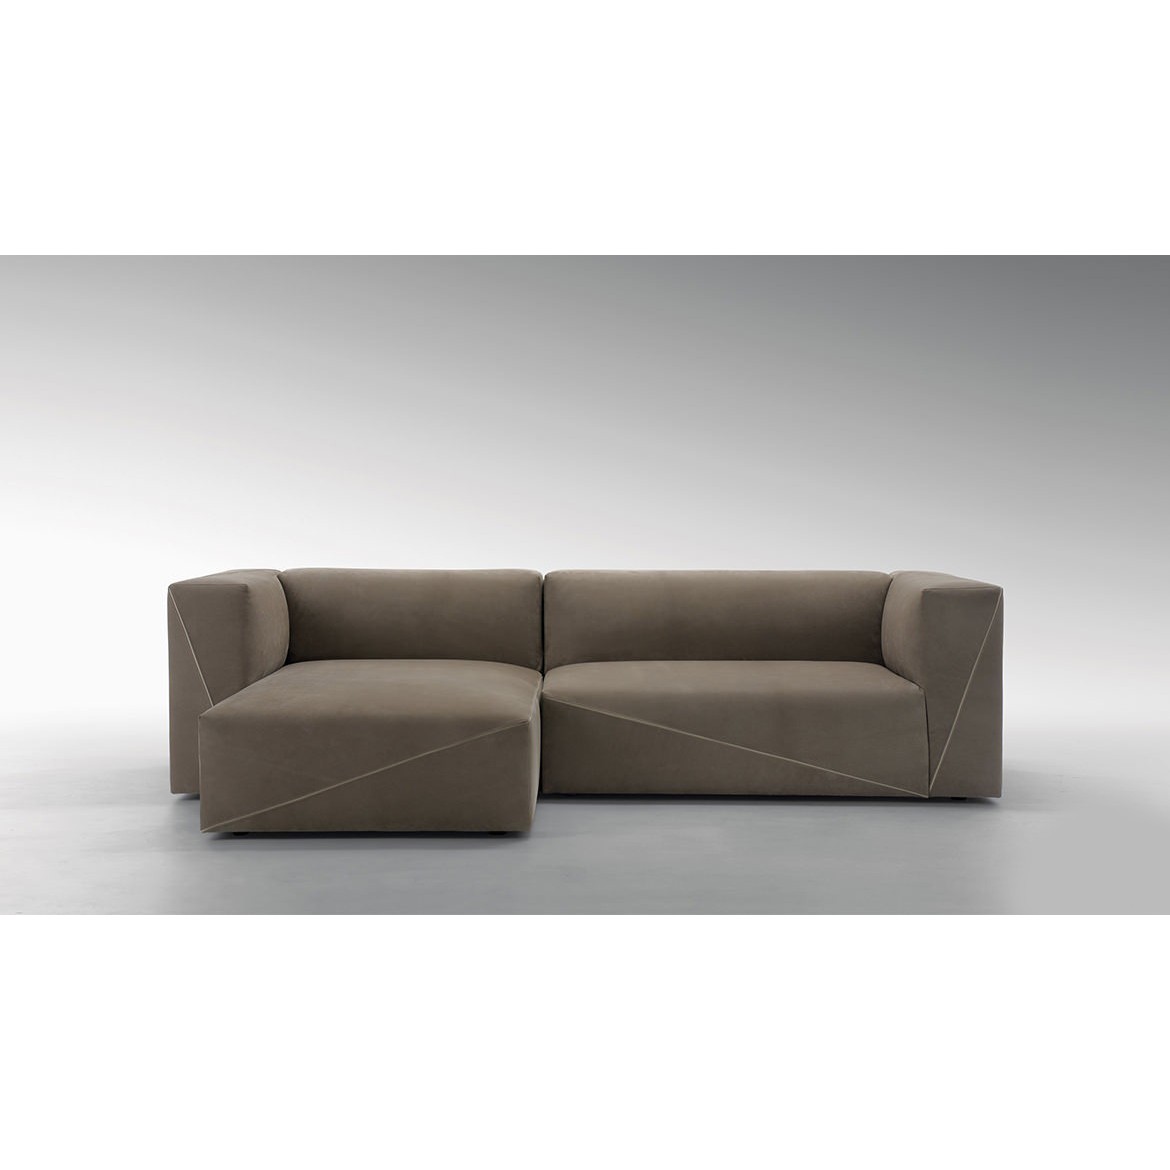 Мебель на заказ / Диван, стиль хай-тек, дизайн Fendi Casa, модель Diagonal Sectional Sofa